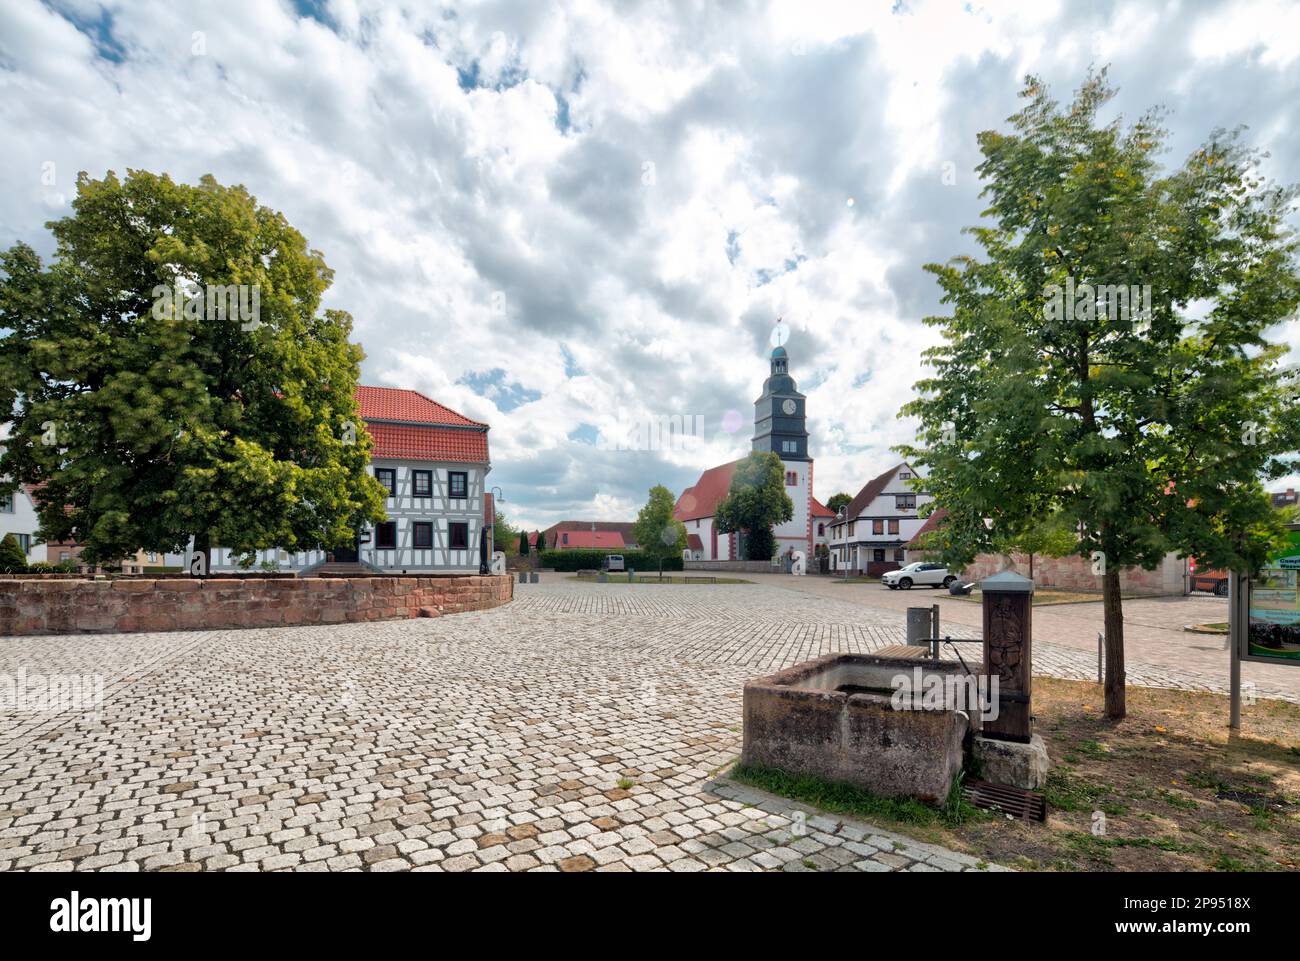 Inn, Zur Linde, marketplace, Marienkirche, historical, Breitungen, Werra, Thuringia, Germany, Stock Photo